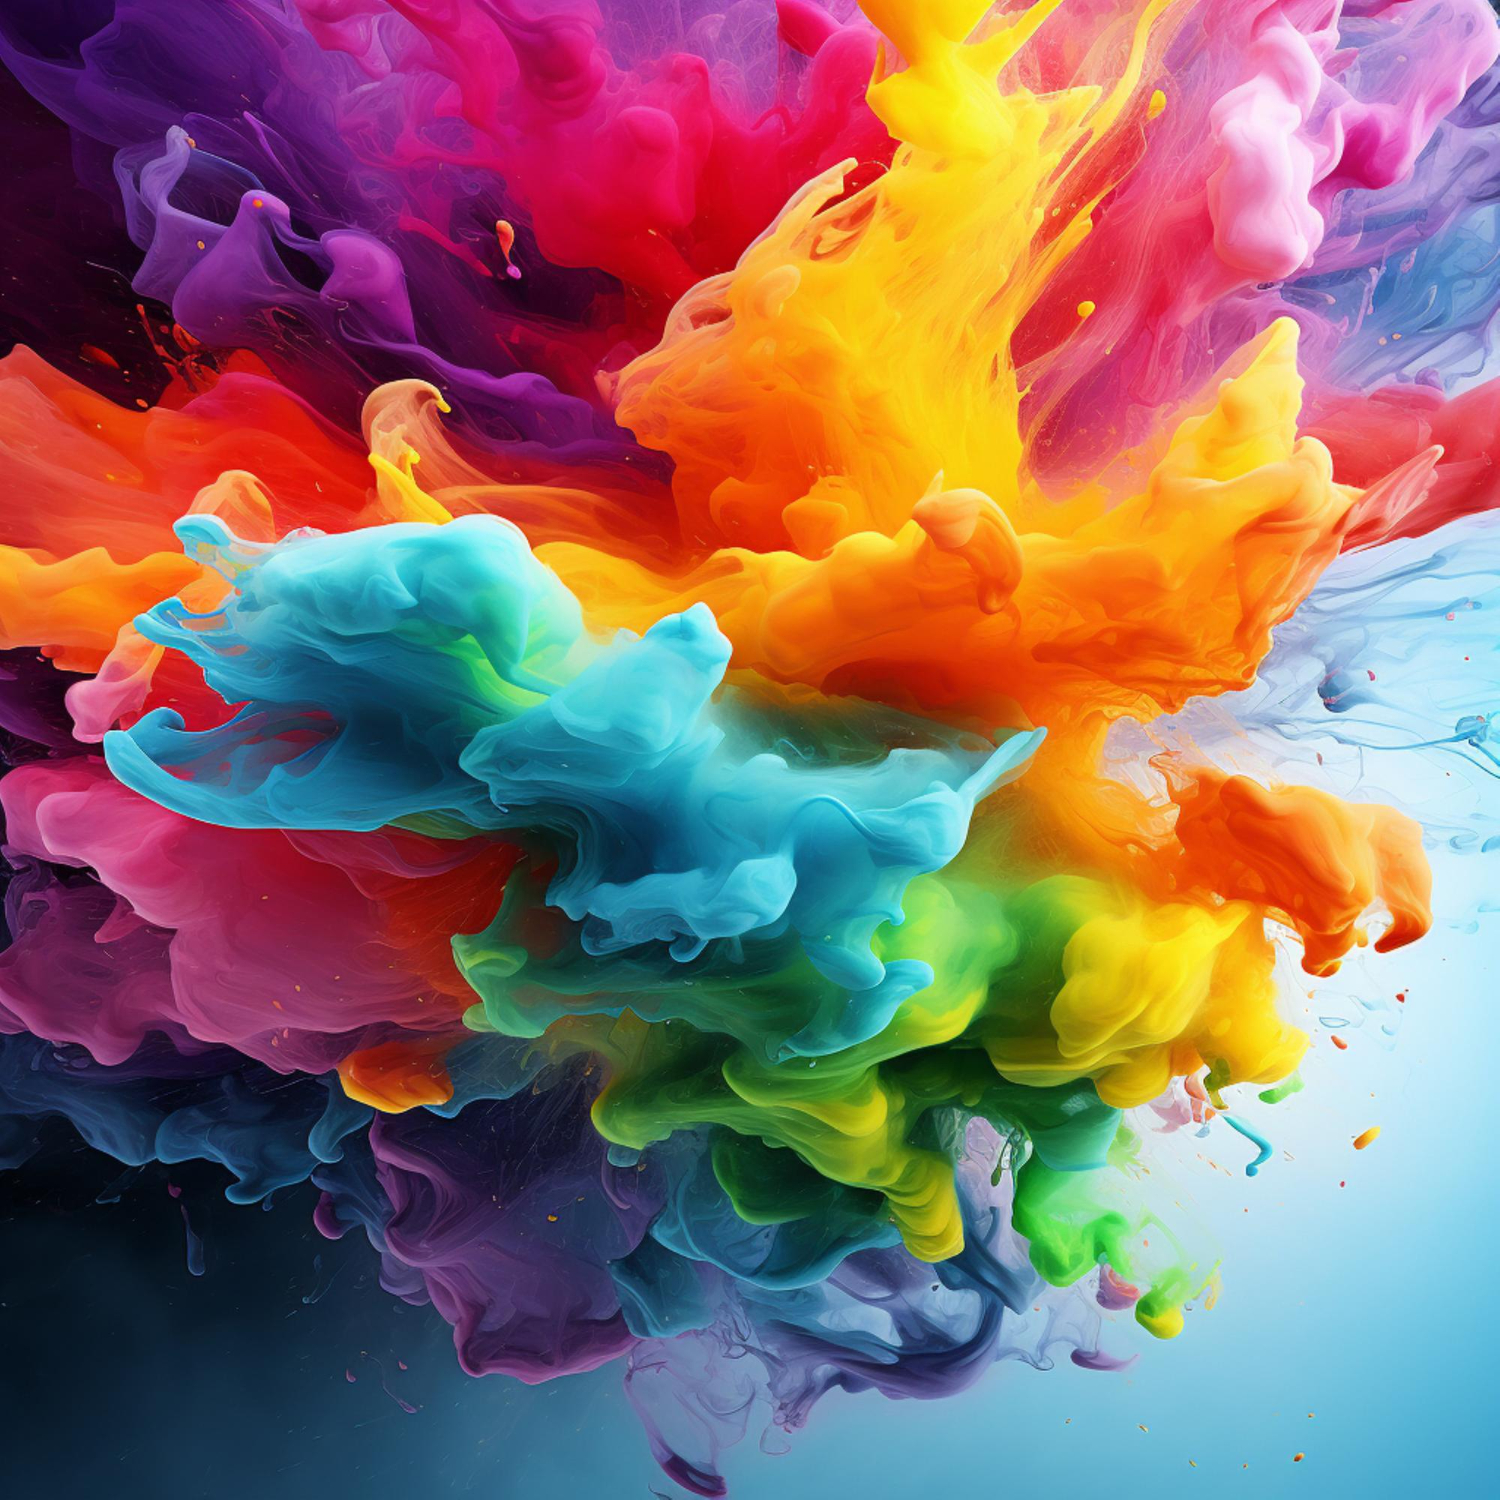 Esplorare la psicologia dei colori: Significati e associazioni emotive